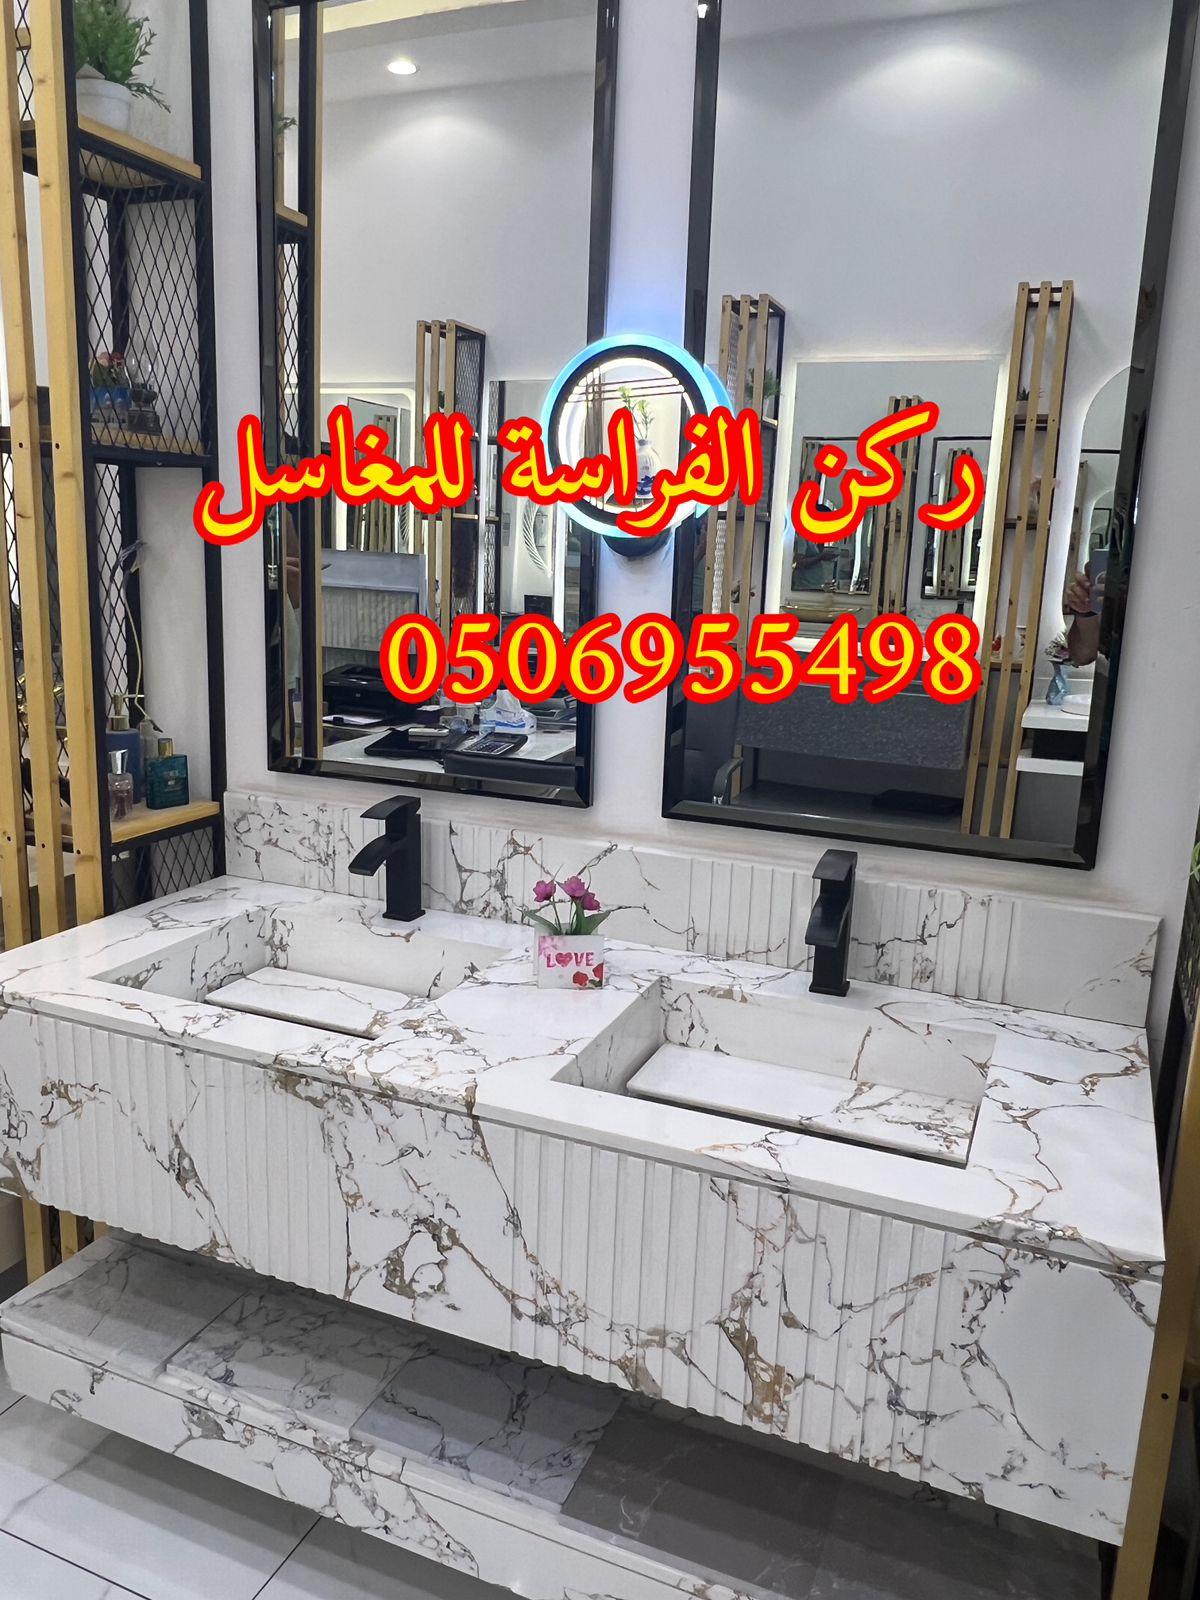 الرياض - تركيب مغاسل حمامات رخام في الرياض, 0506955498 264446808